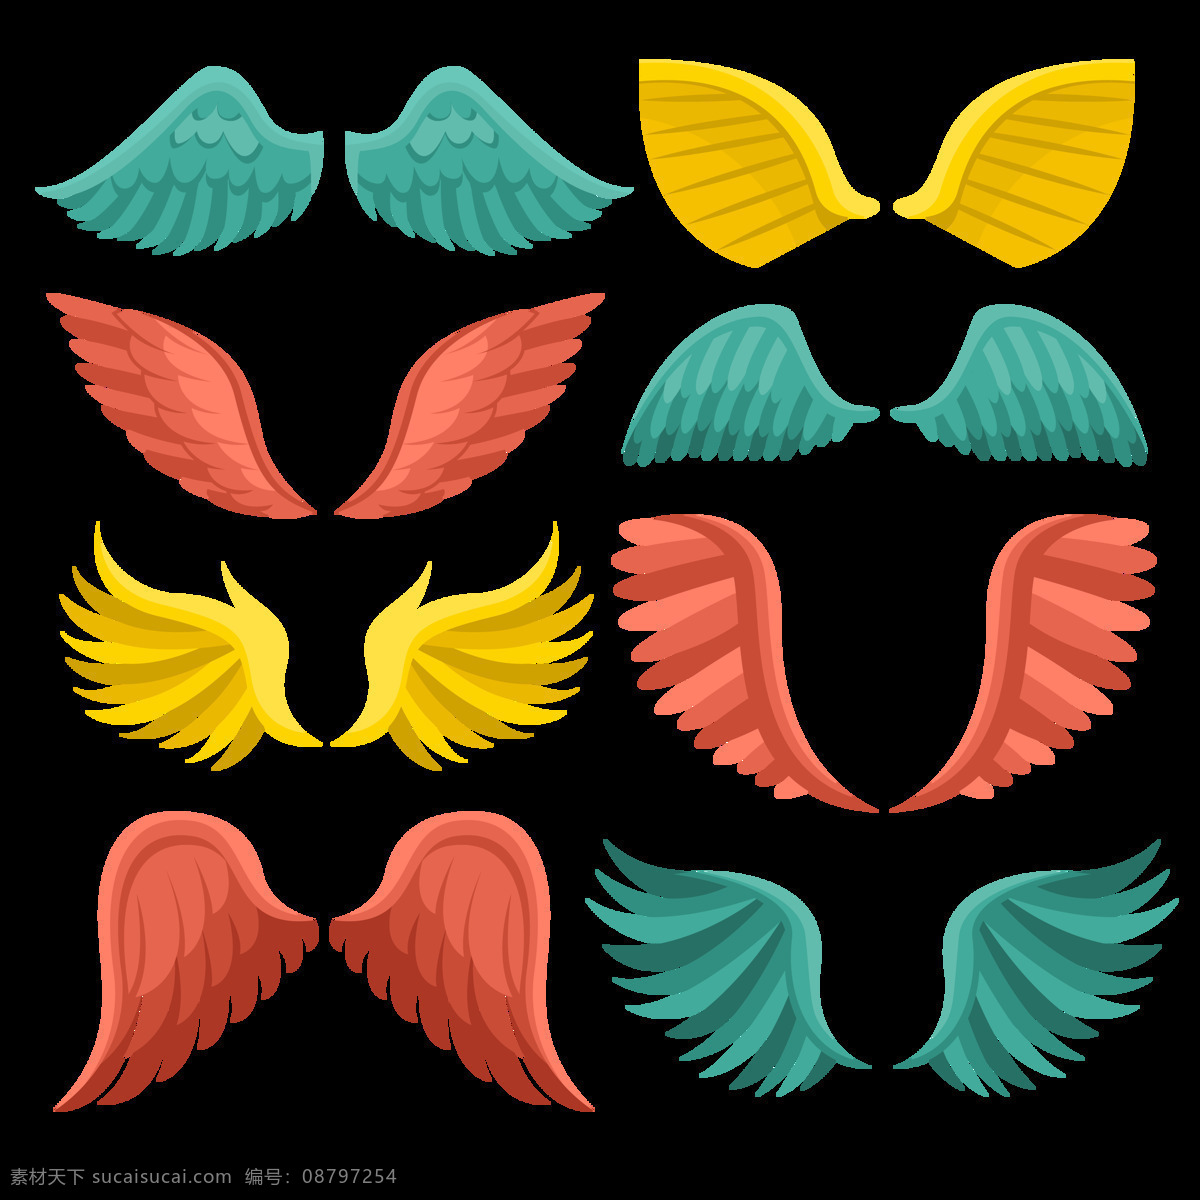 彩色 创意 翅膀 免 抠 透明 图 层 彩色创意翅膀 手绘翅膀 翅膀元素 小 天使 卡通翅膀 翅膀图片素材 纹身图案 翅膀素材 手绘翅膀图片